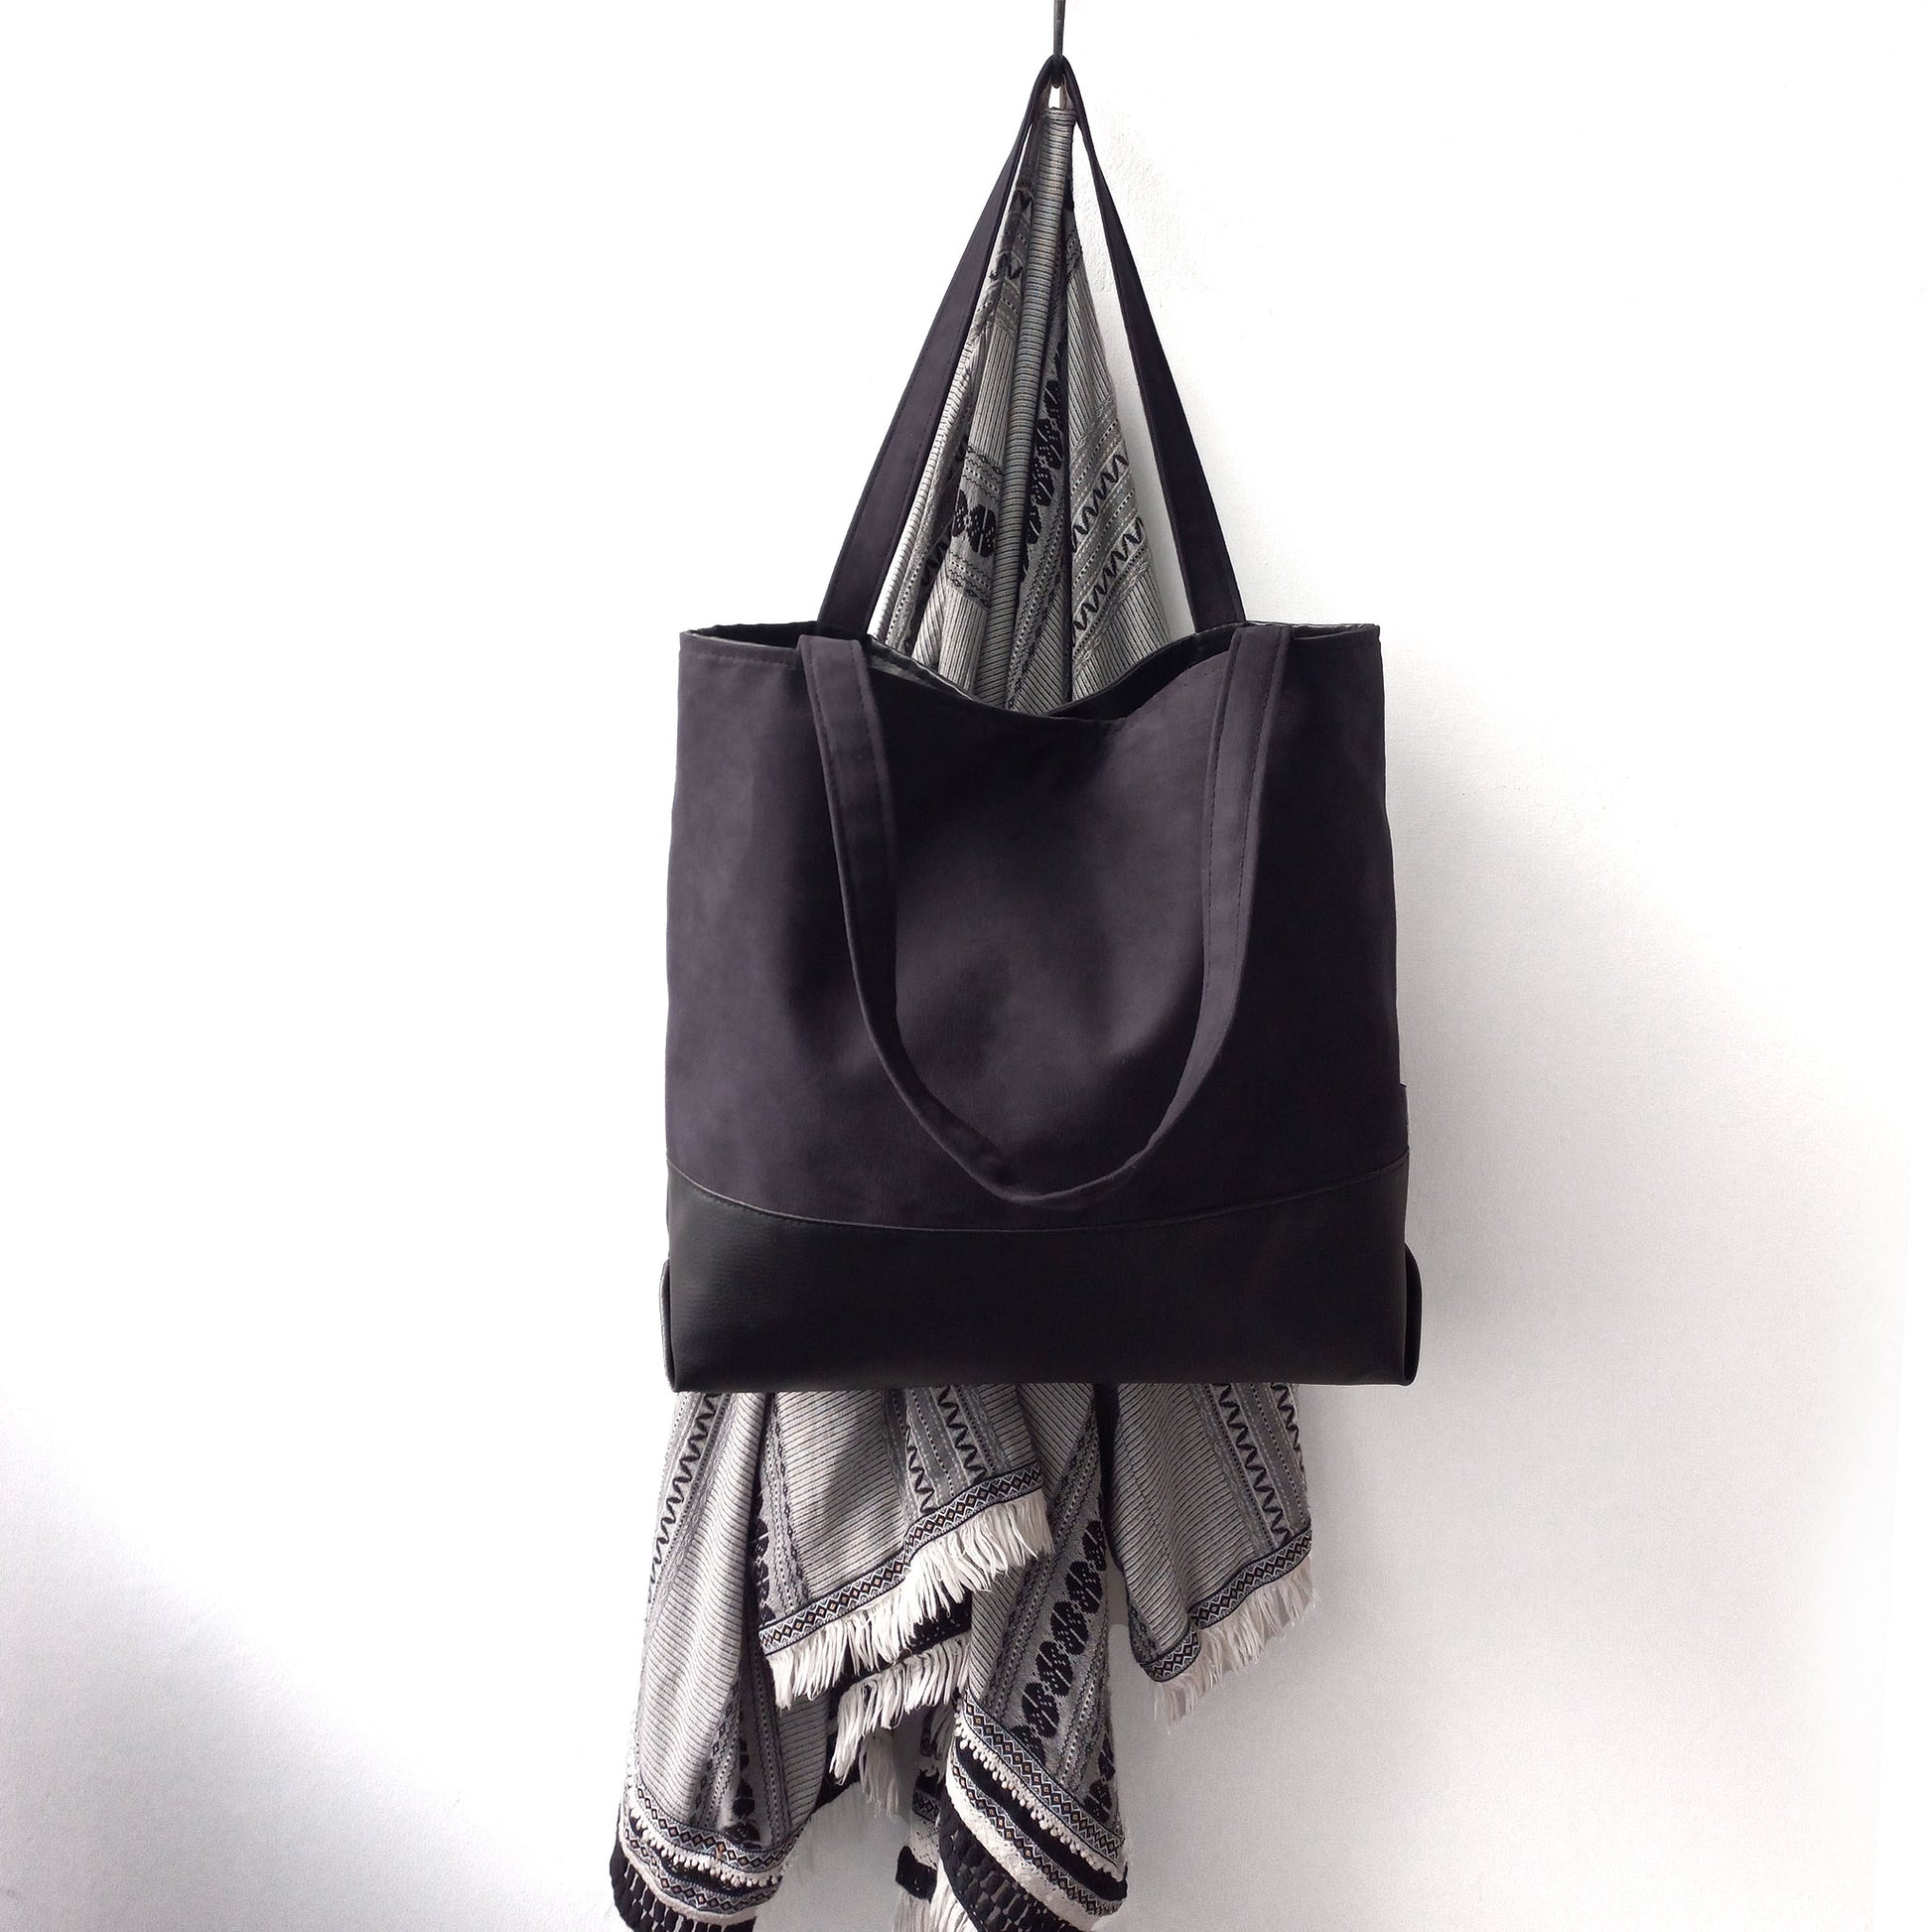 Black shoulder bag on a hanger